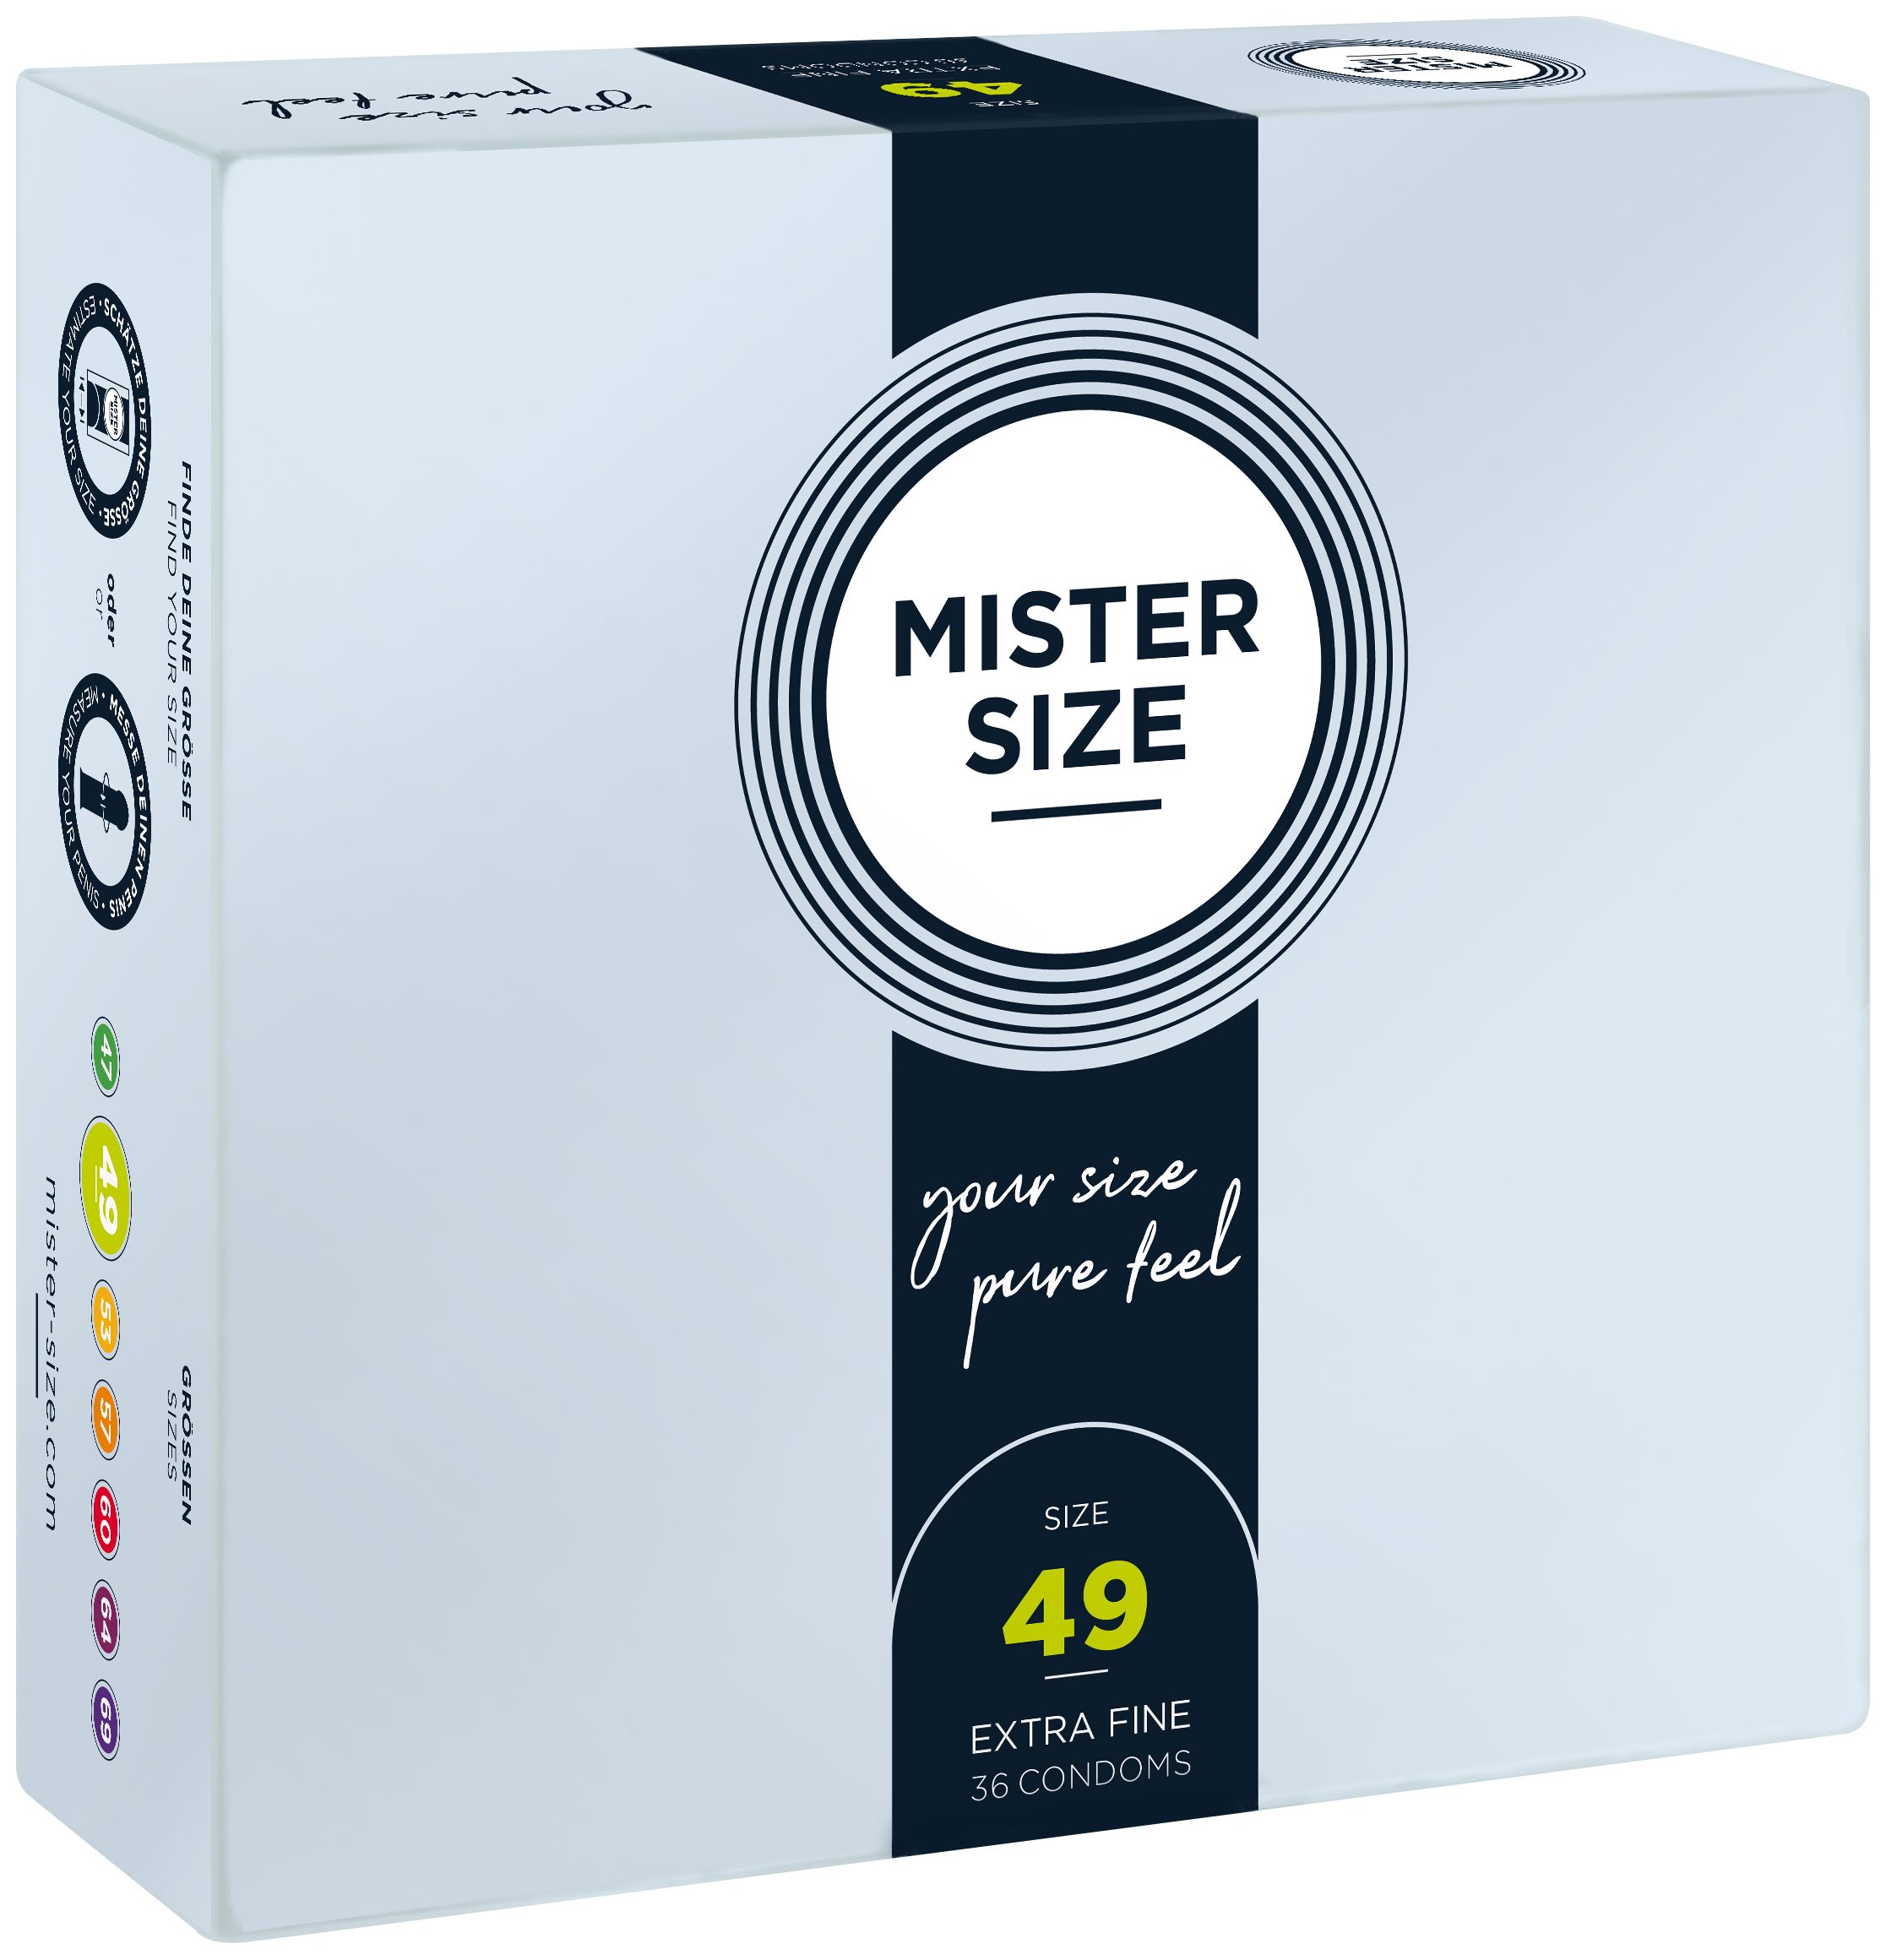 MISTER SIZE Kondome 36 Stück, Nominale Breite 49mm, gefühlsecht & feucht